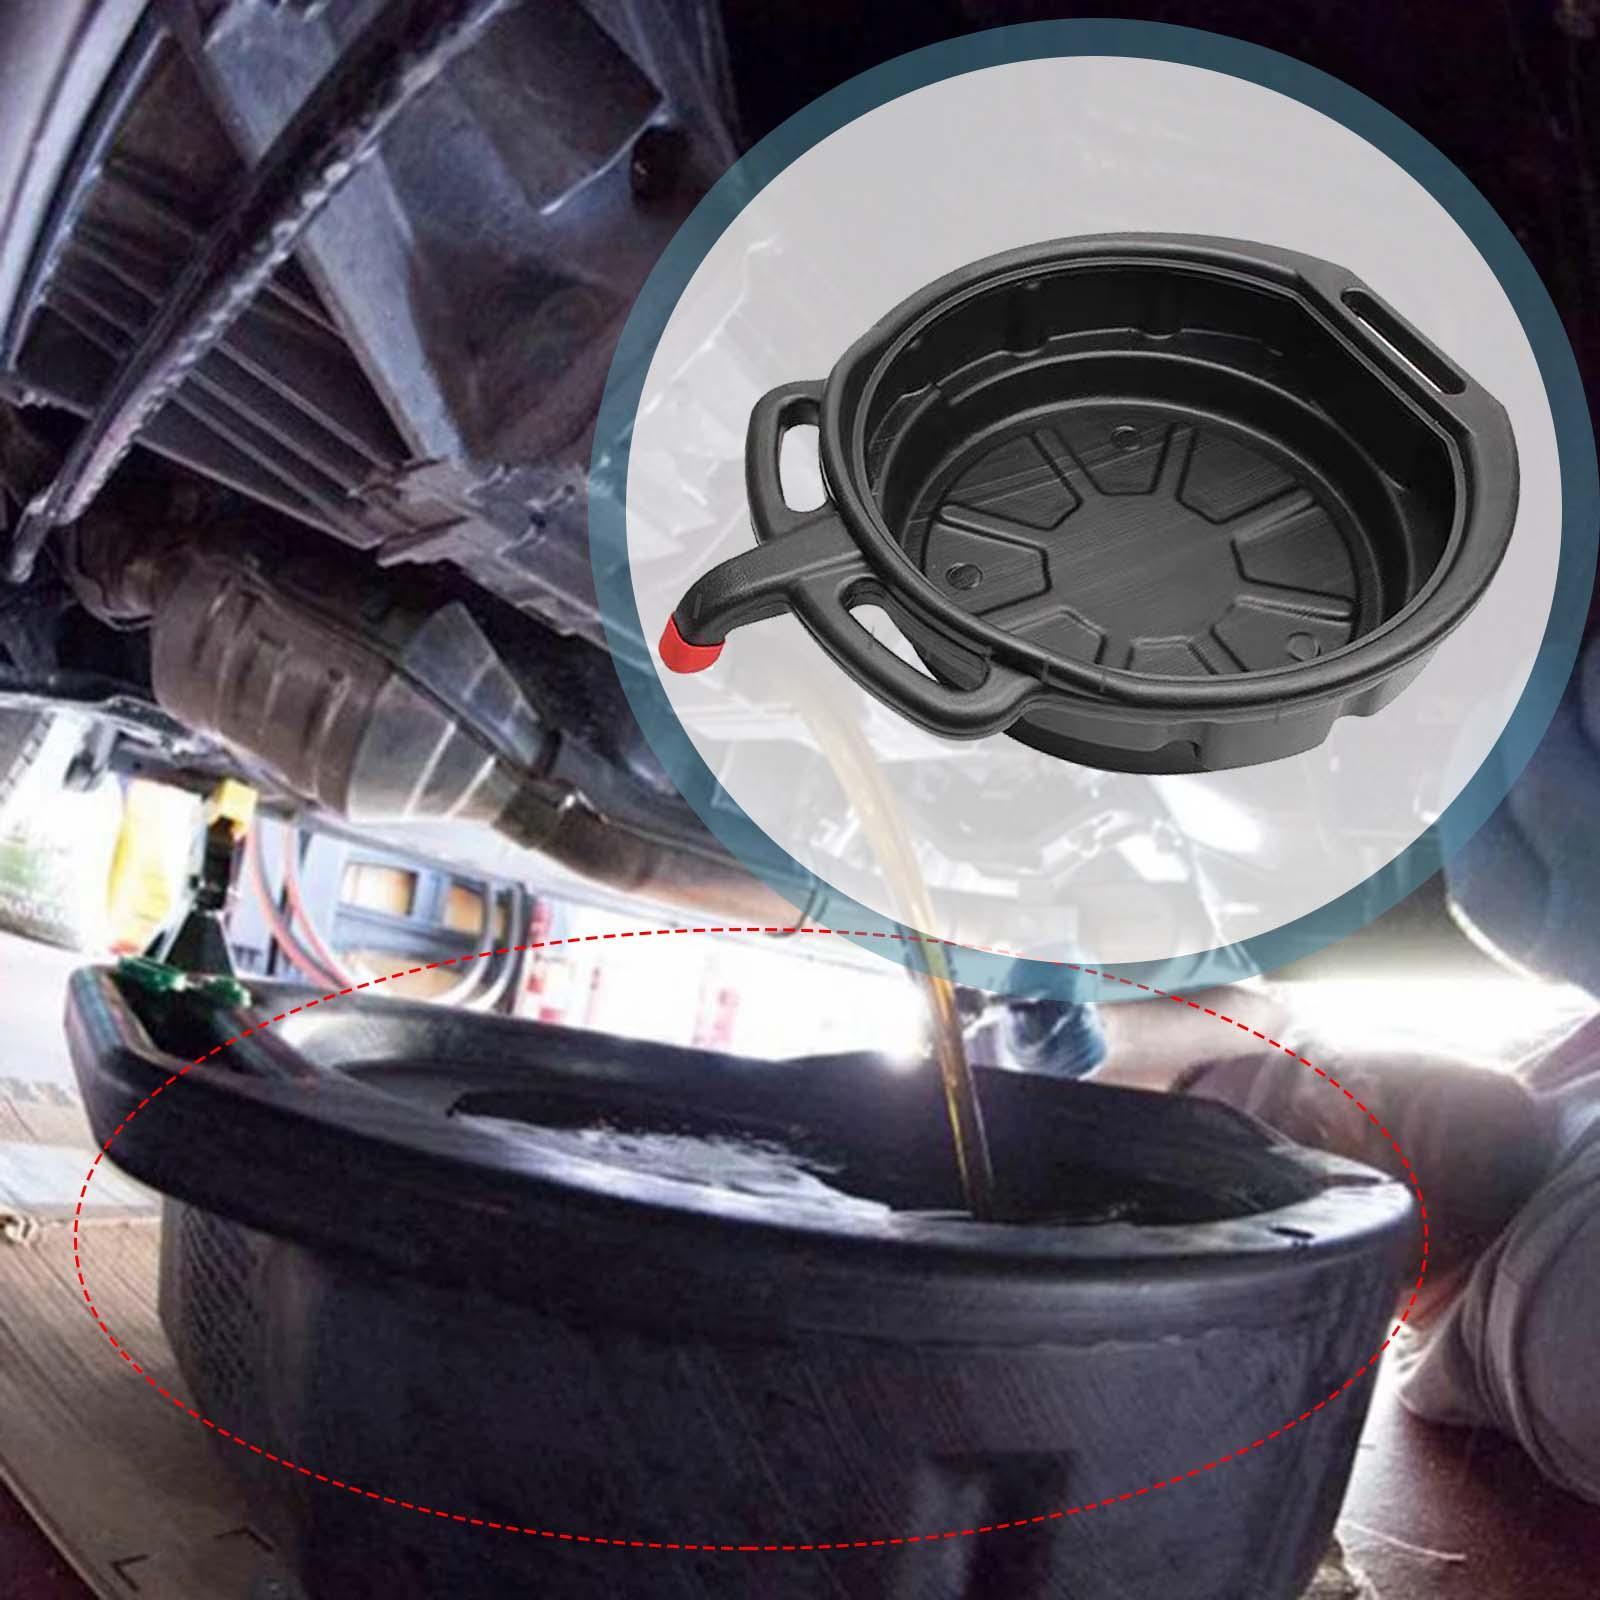 Drain Pan Anti Spatter Tool Motor Oil  Pan for Car Motorbike